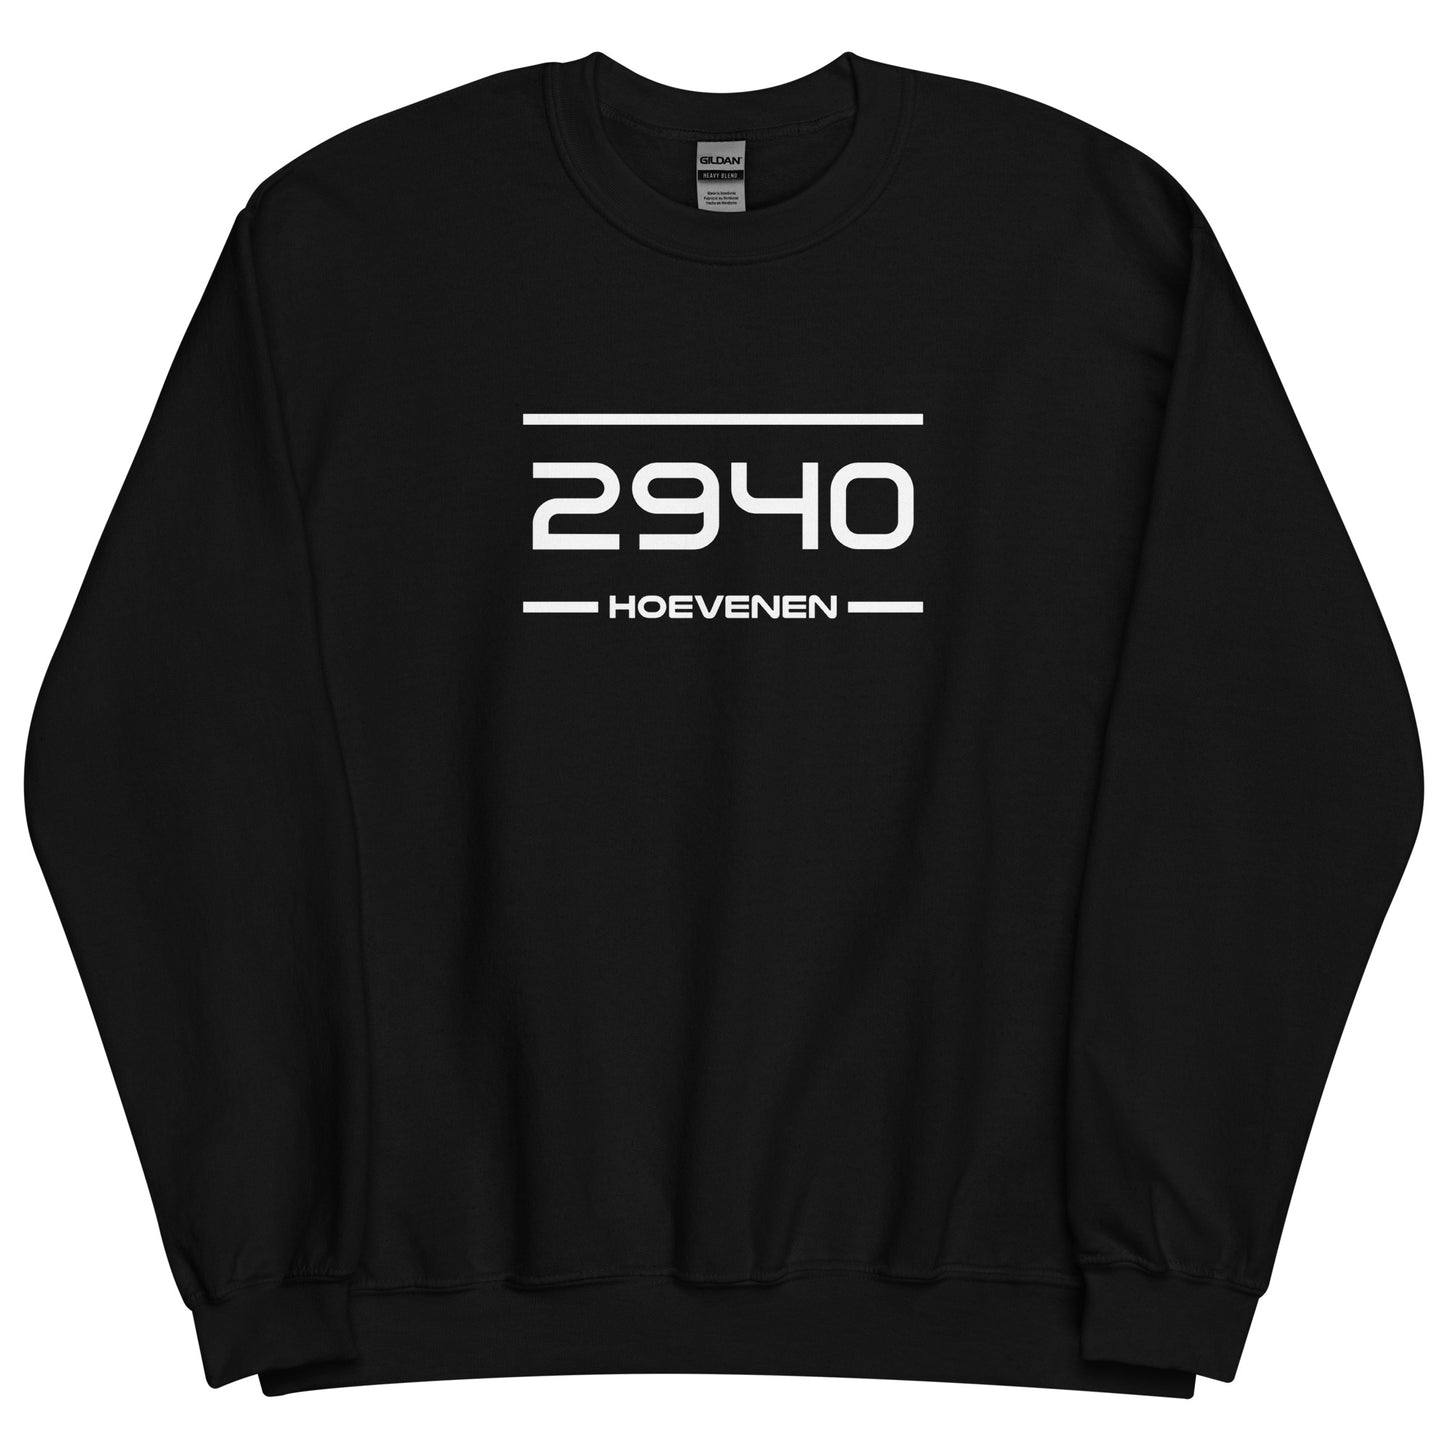 Sweater - 2940 - Hoevenen (M/V)